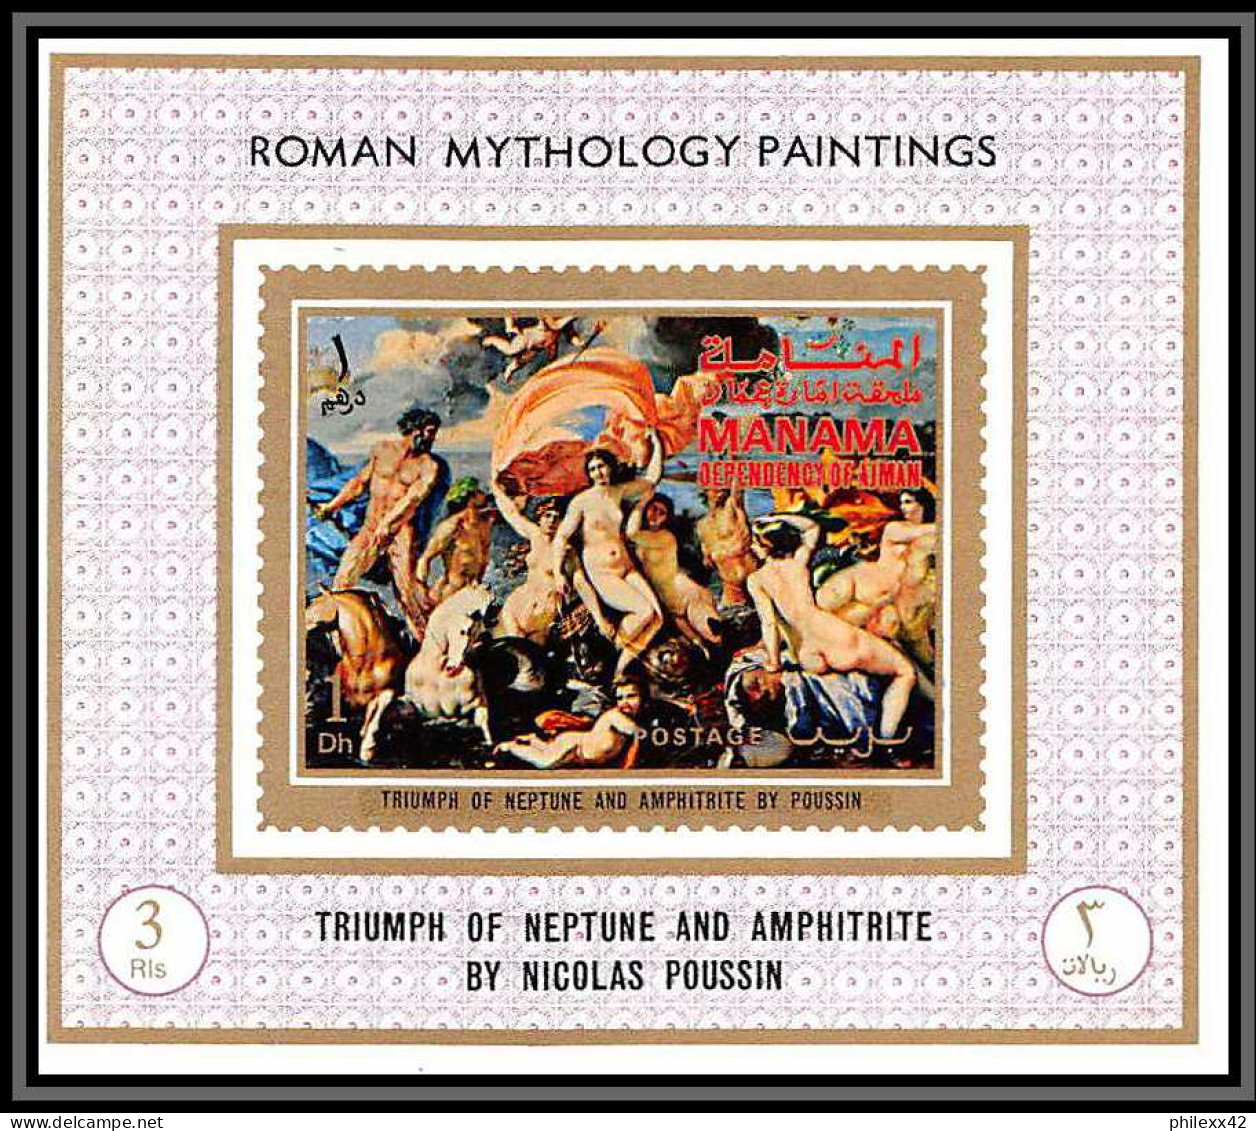 Manama - 3412/ N°664/671 moman mythology paintings nus nudes Tableau (Painting) neuf ** MNH deluxe miniature sheet